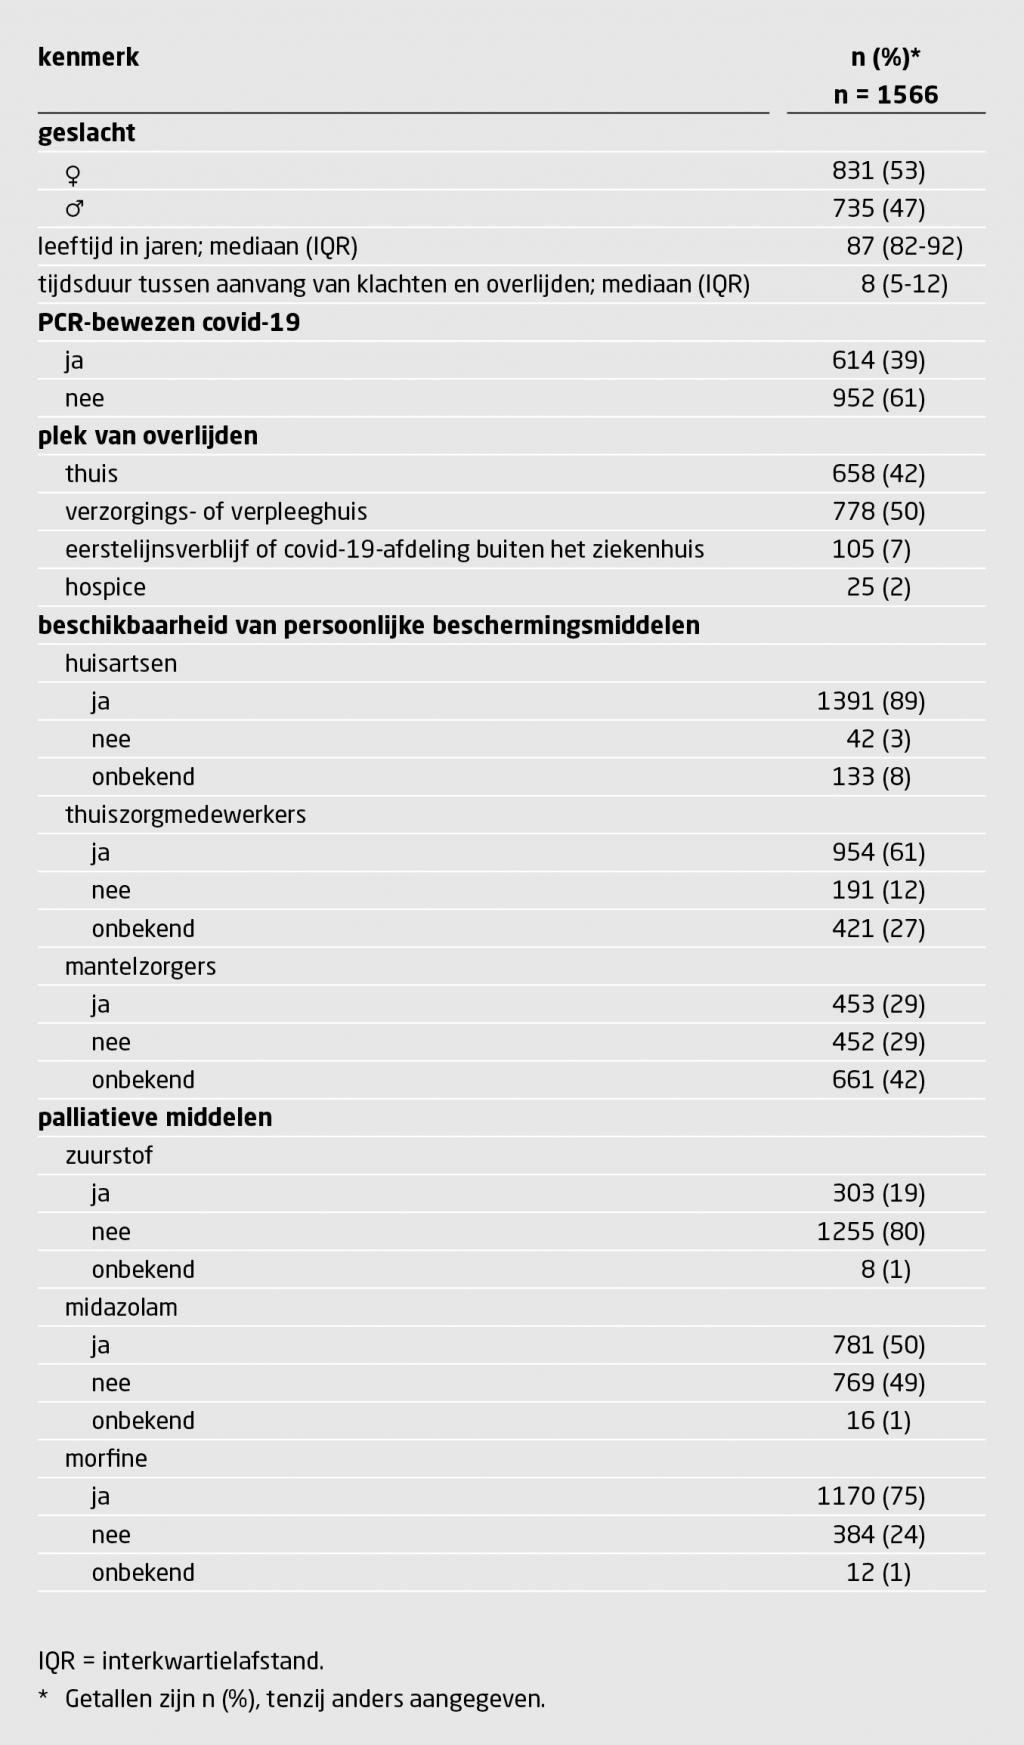 Tabel 1 | 1566 patiënten overleden – onder de zorg van de huisarts – aan covid-19 | Kenmerken van 1566 patiënten die tijdens de eerste golf van de covid-19-pandemie buiten het ziekenhuis – onder de zorg van de huisarts – overleden aan de gevolgen van een PCR-bewezen of vermeende SARS-CoV-2-infectie